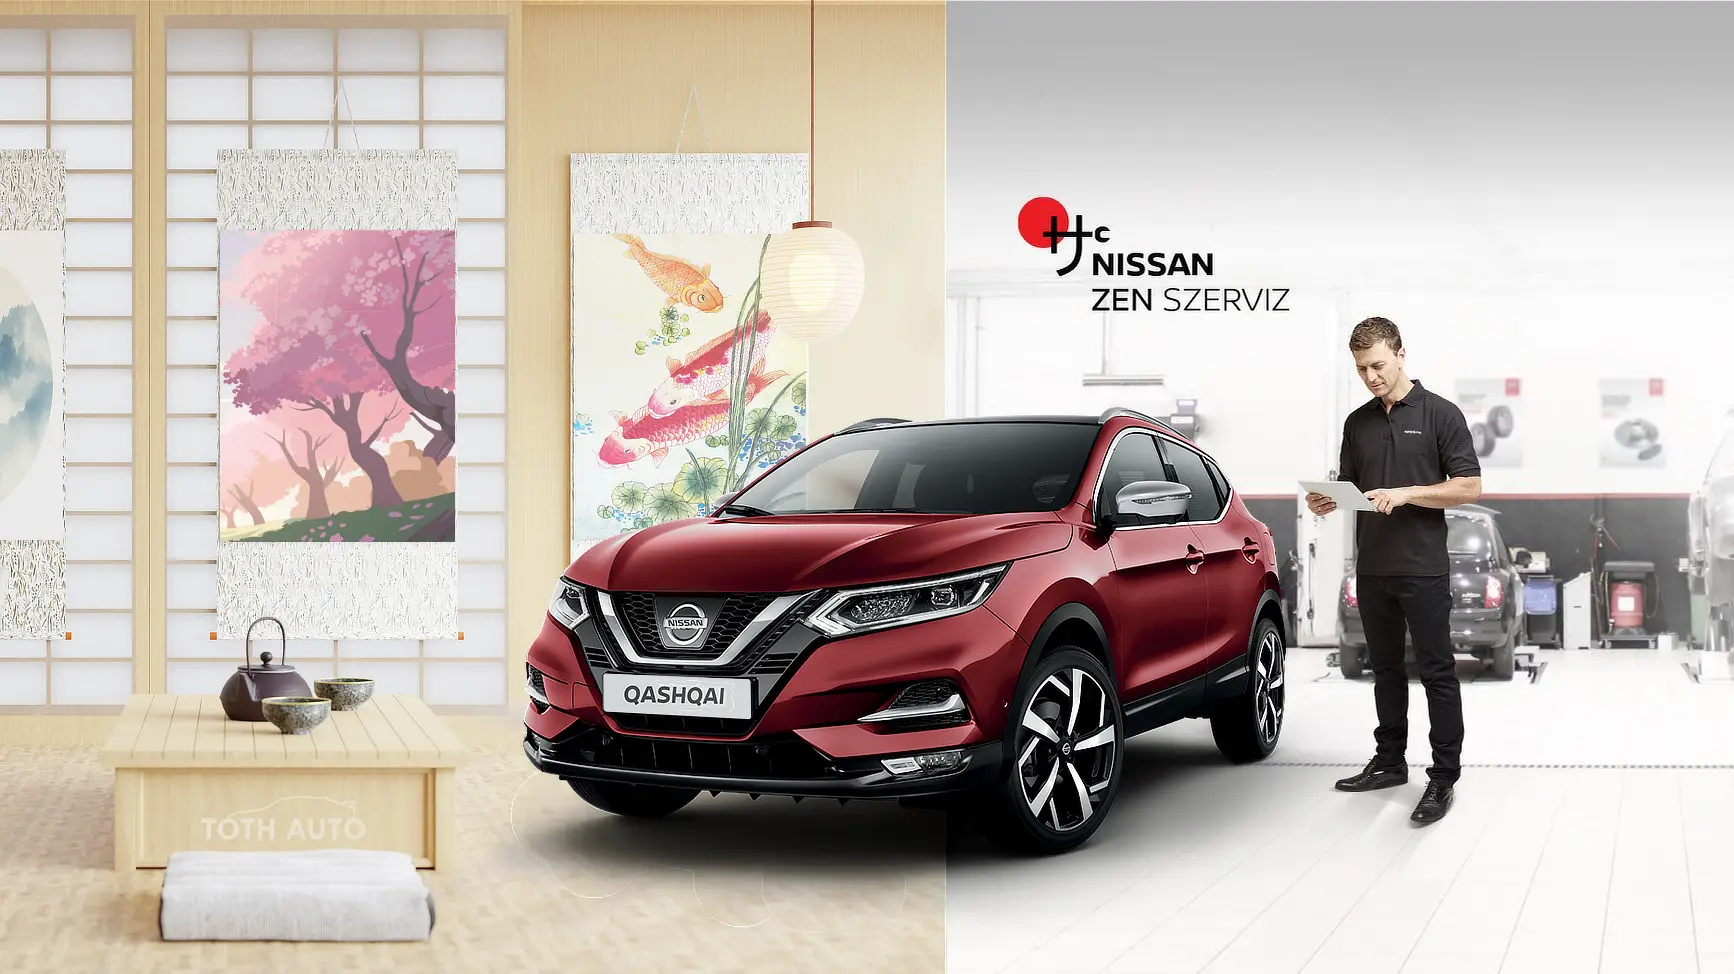 Nissan Zen szerviz